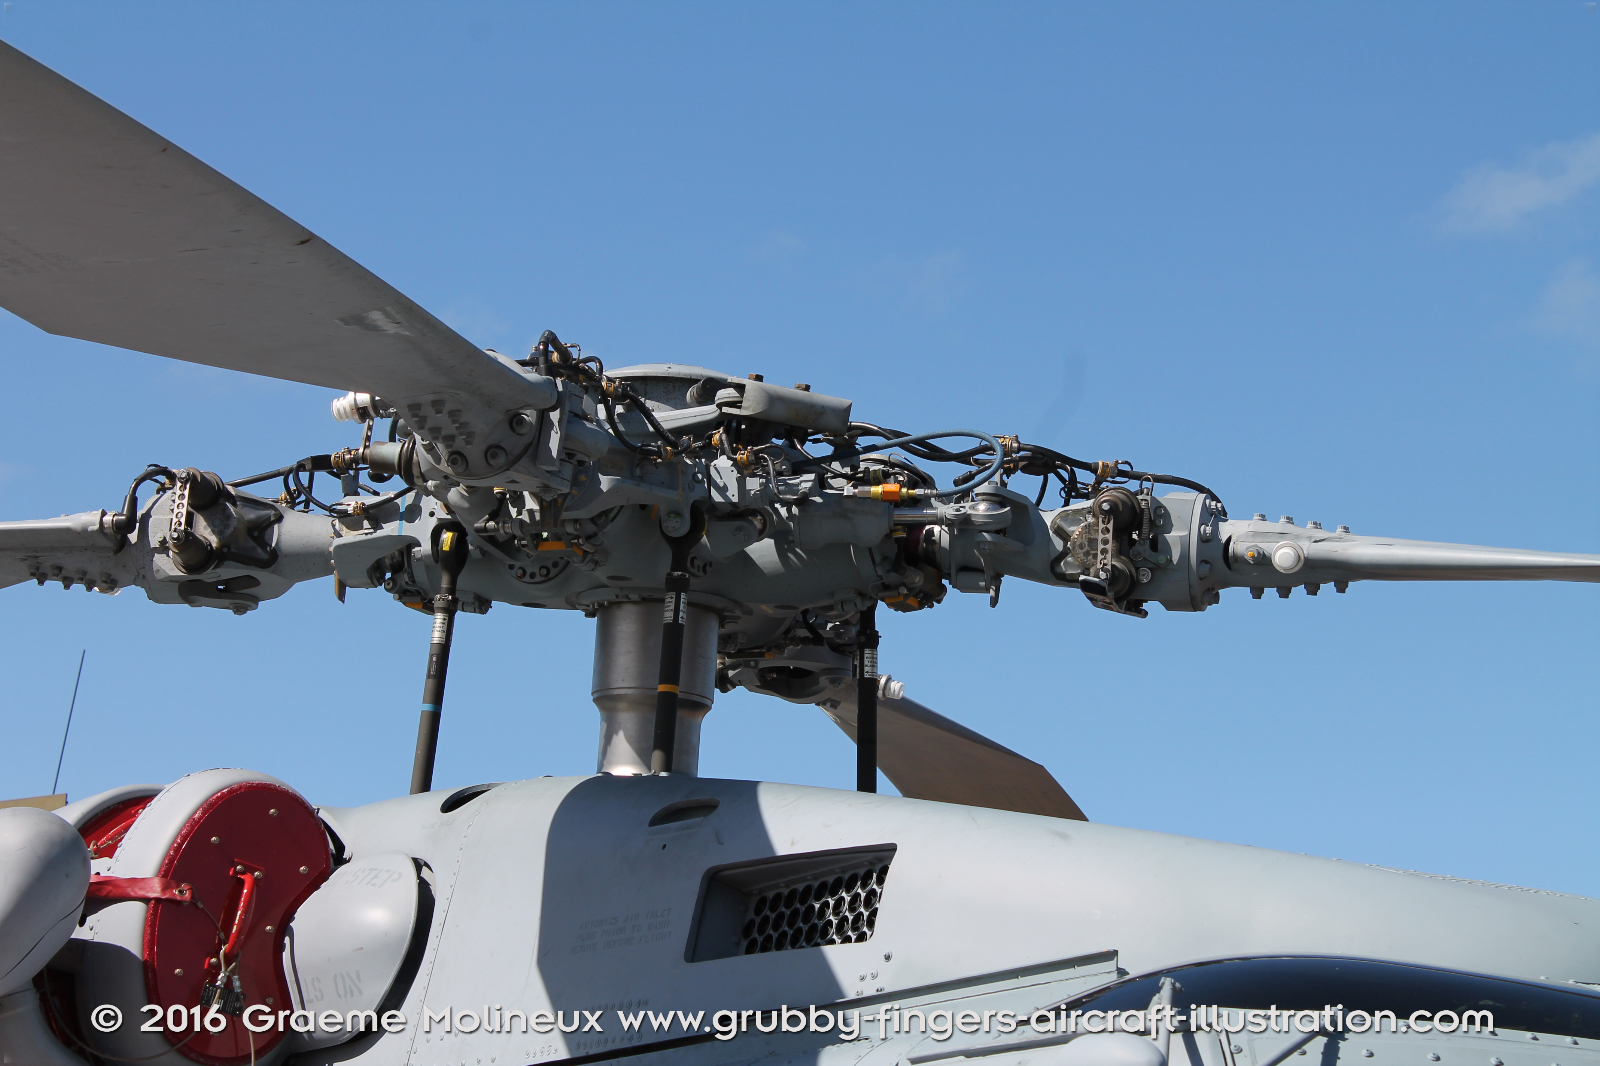 SIKORSKY_MH-60R_Seahawk_N48-005_Avalon_2015_18_GrubbyFingers